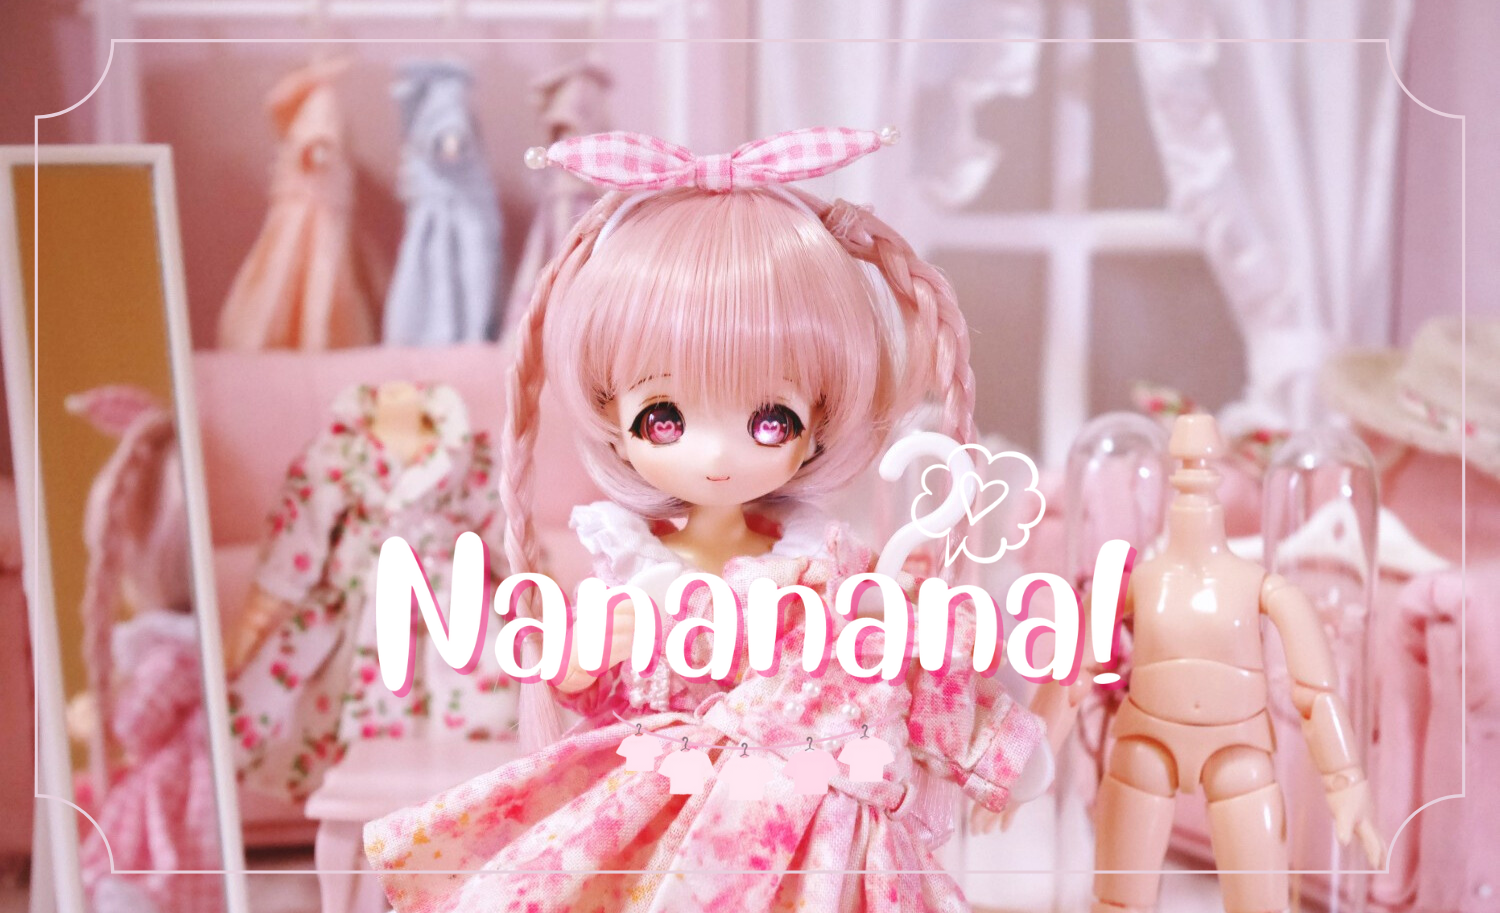 Nananana!